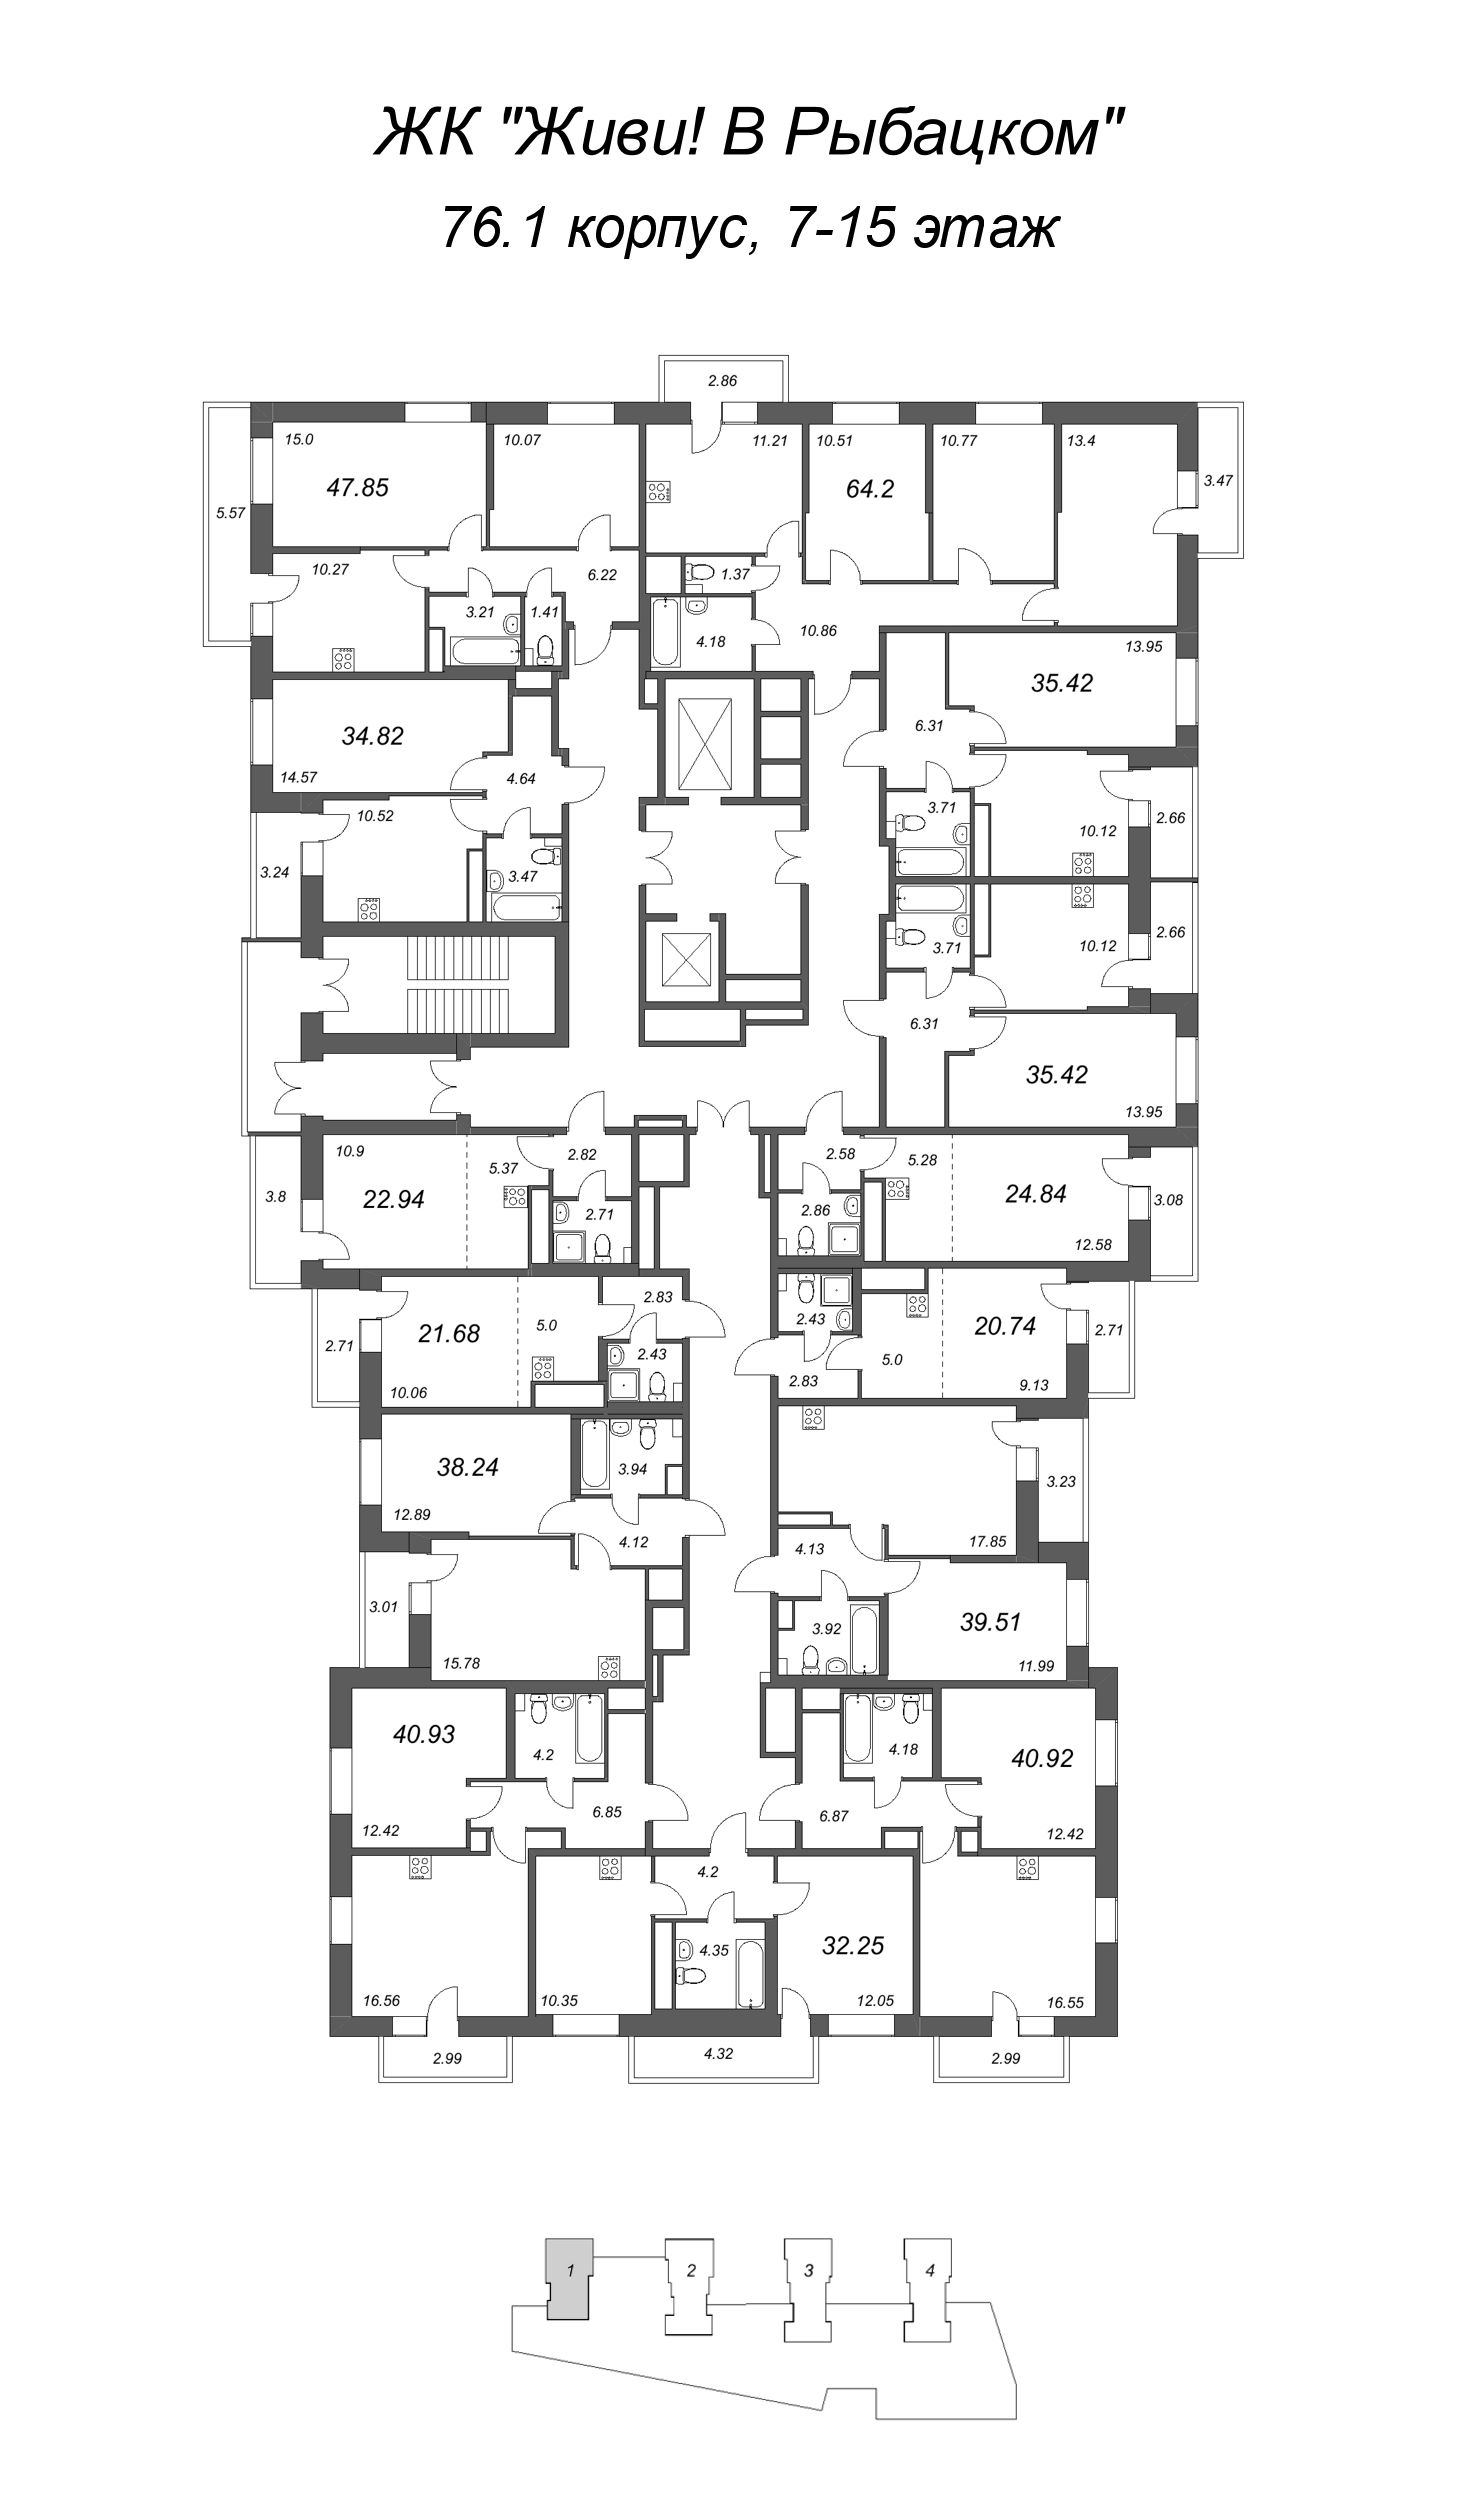 Квартира-студия, 21.68 м² в ЖК "Живи! В Рыбацком" - планировка этажа